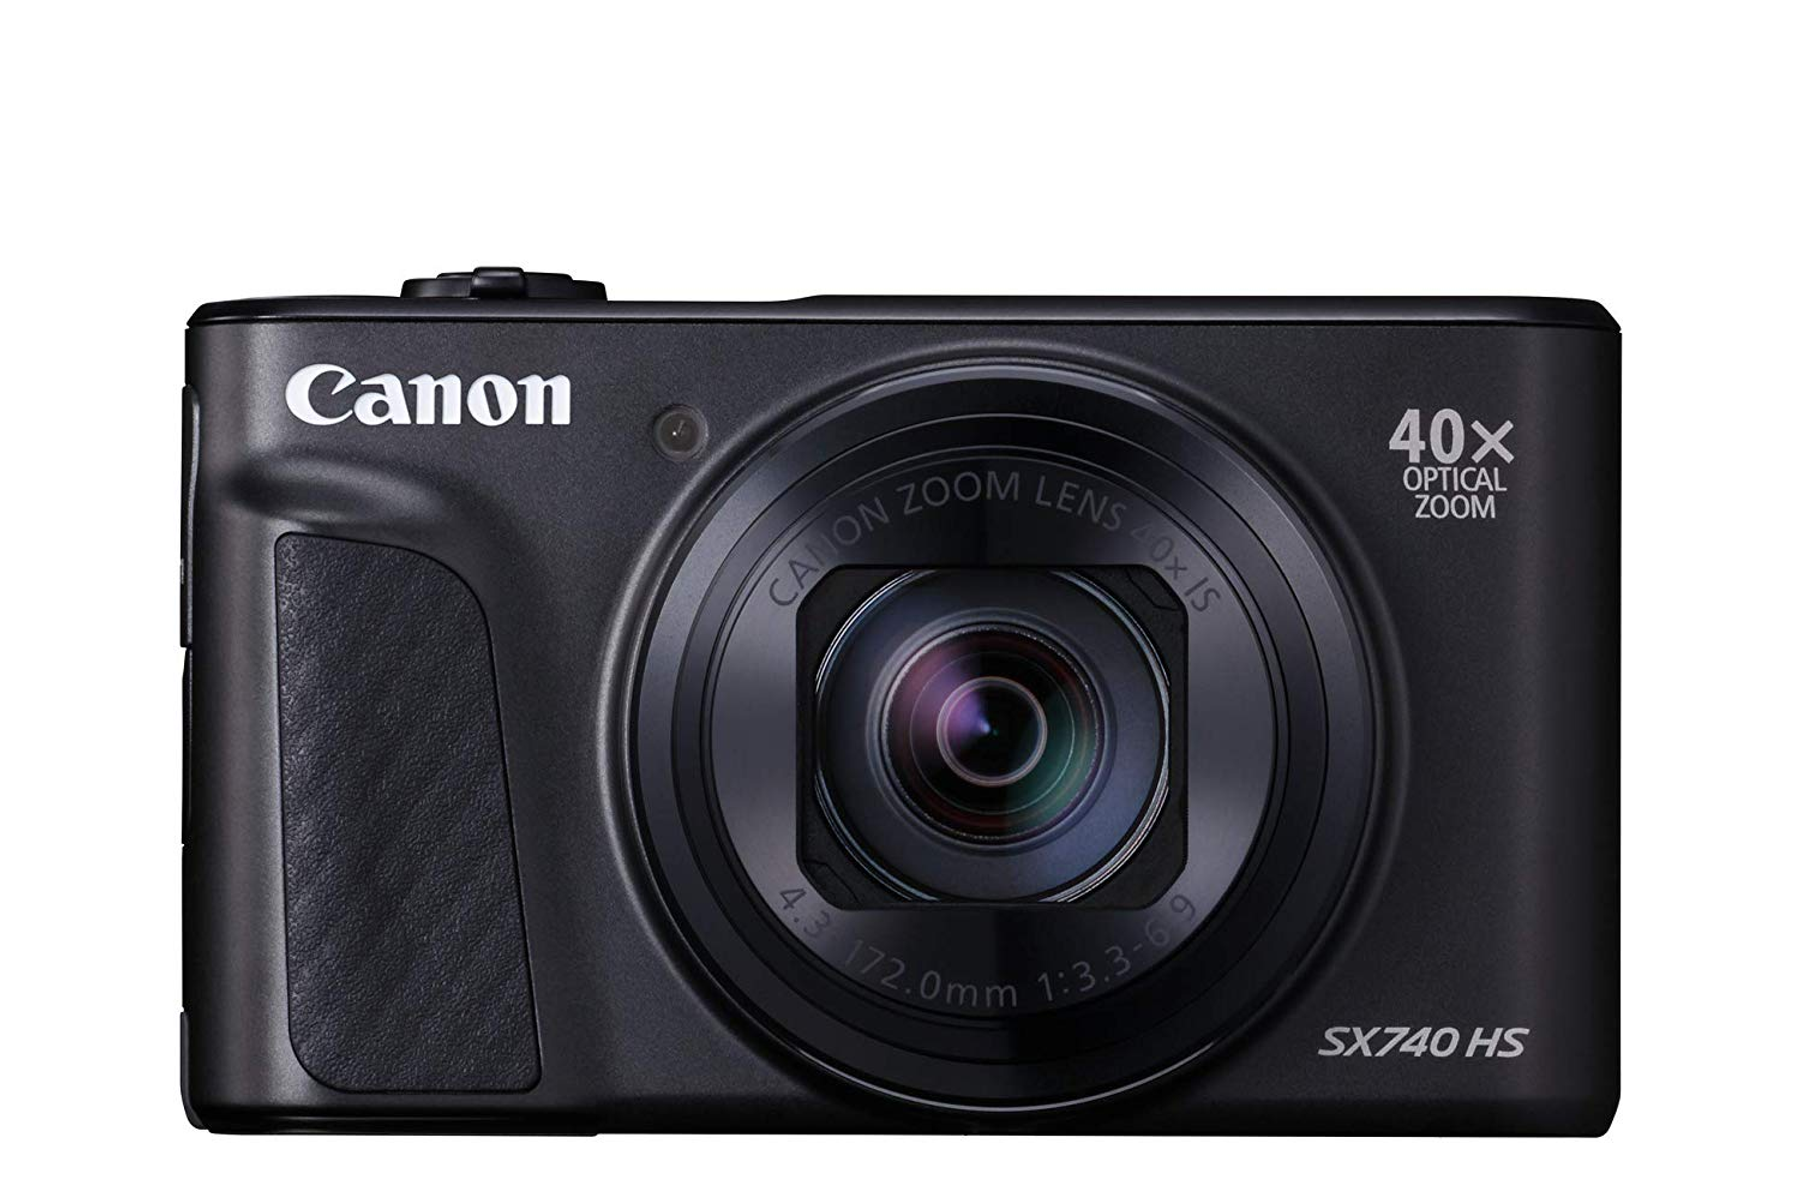 Digitalkamera LCD Zoom, opt. CANON POWERSHOT 40fach 740 Schwarz, SX HS (TFT), WLAN-